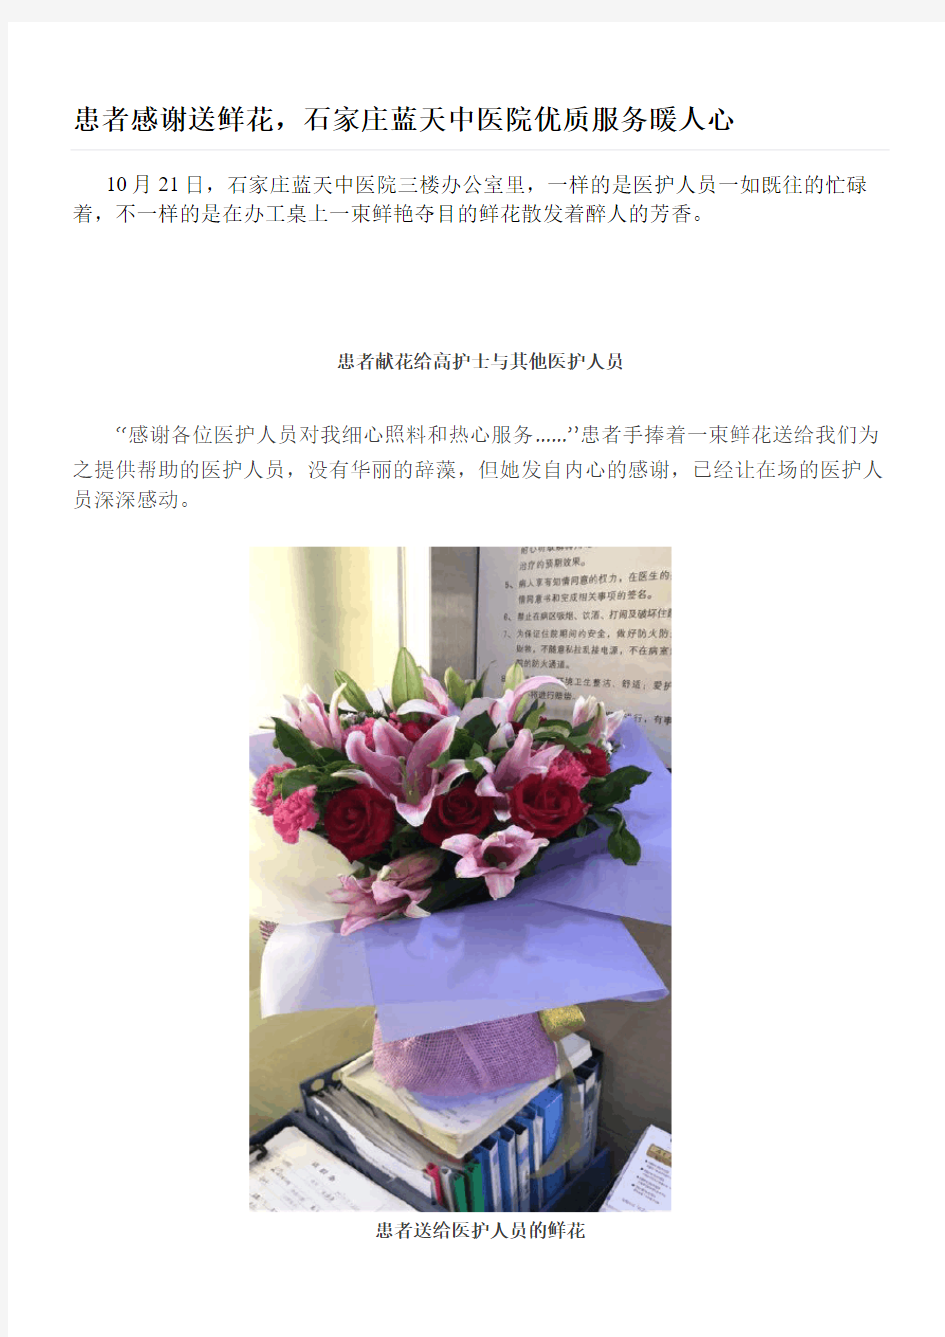 患者感谢送鲜花,石家庄蓝天中医院优质服务暖人心